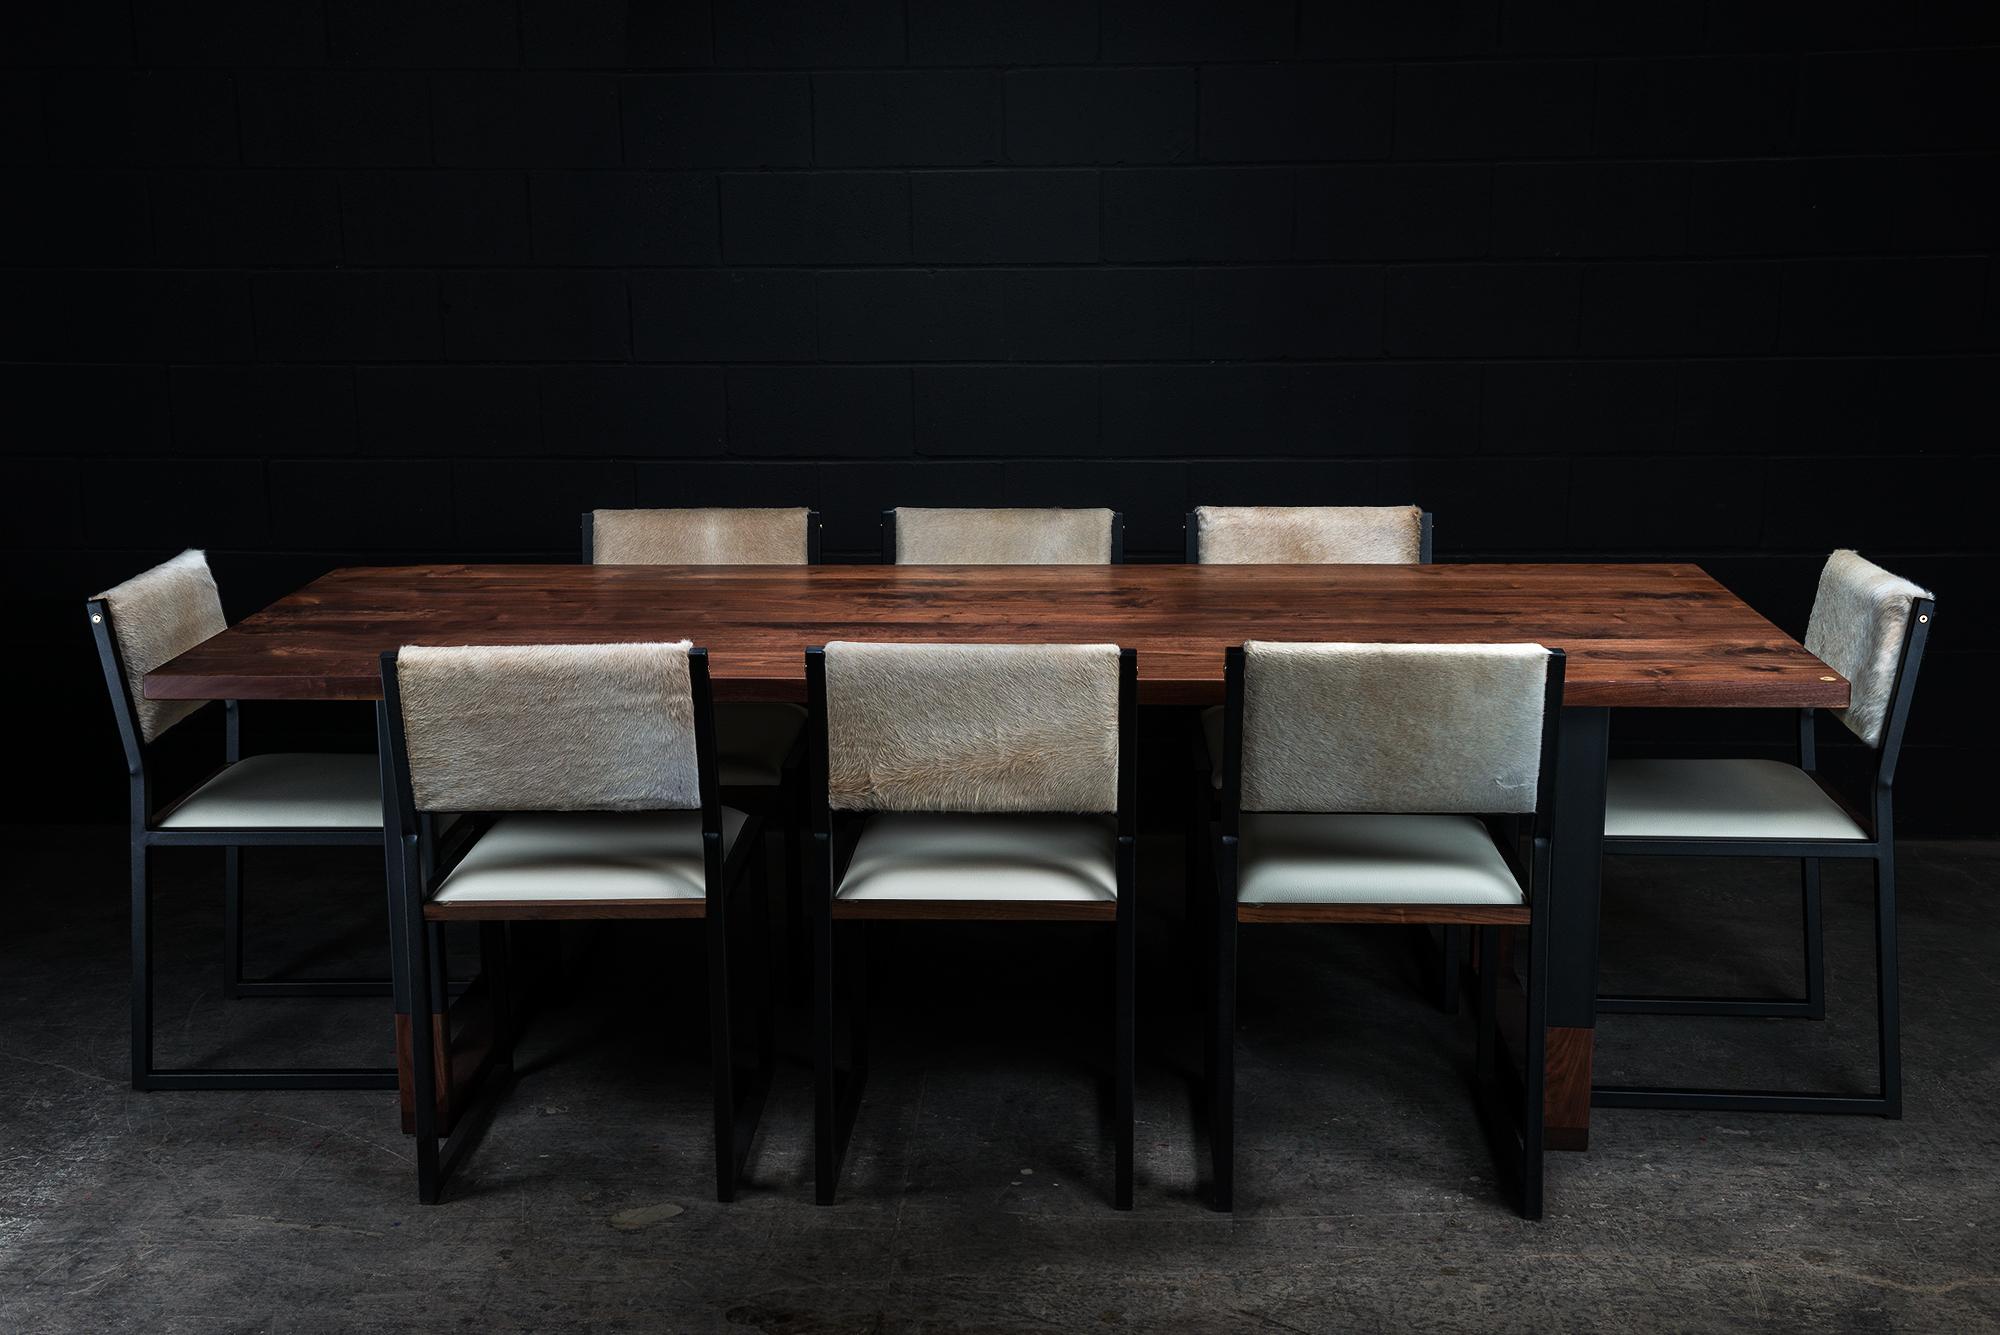 La Richmond est une élégante table de salle à manger contemporaine fabriquée à la main sur commande à partir de bois dur américain massif sélectionné à la main et dotée de nos pieds hybrides sans soudure. La table a une finition à l'huile et à la